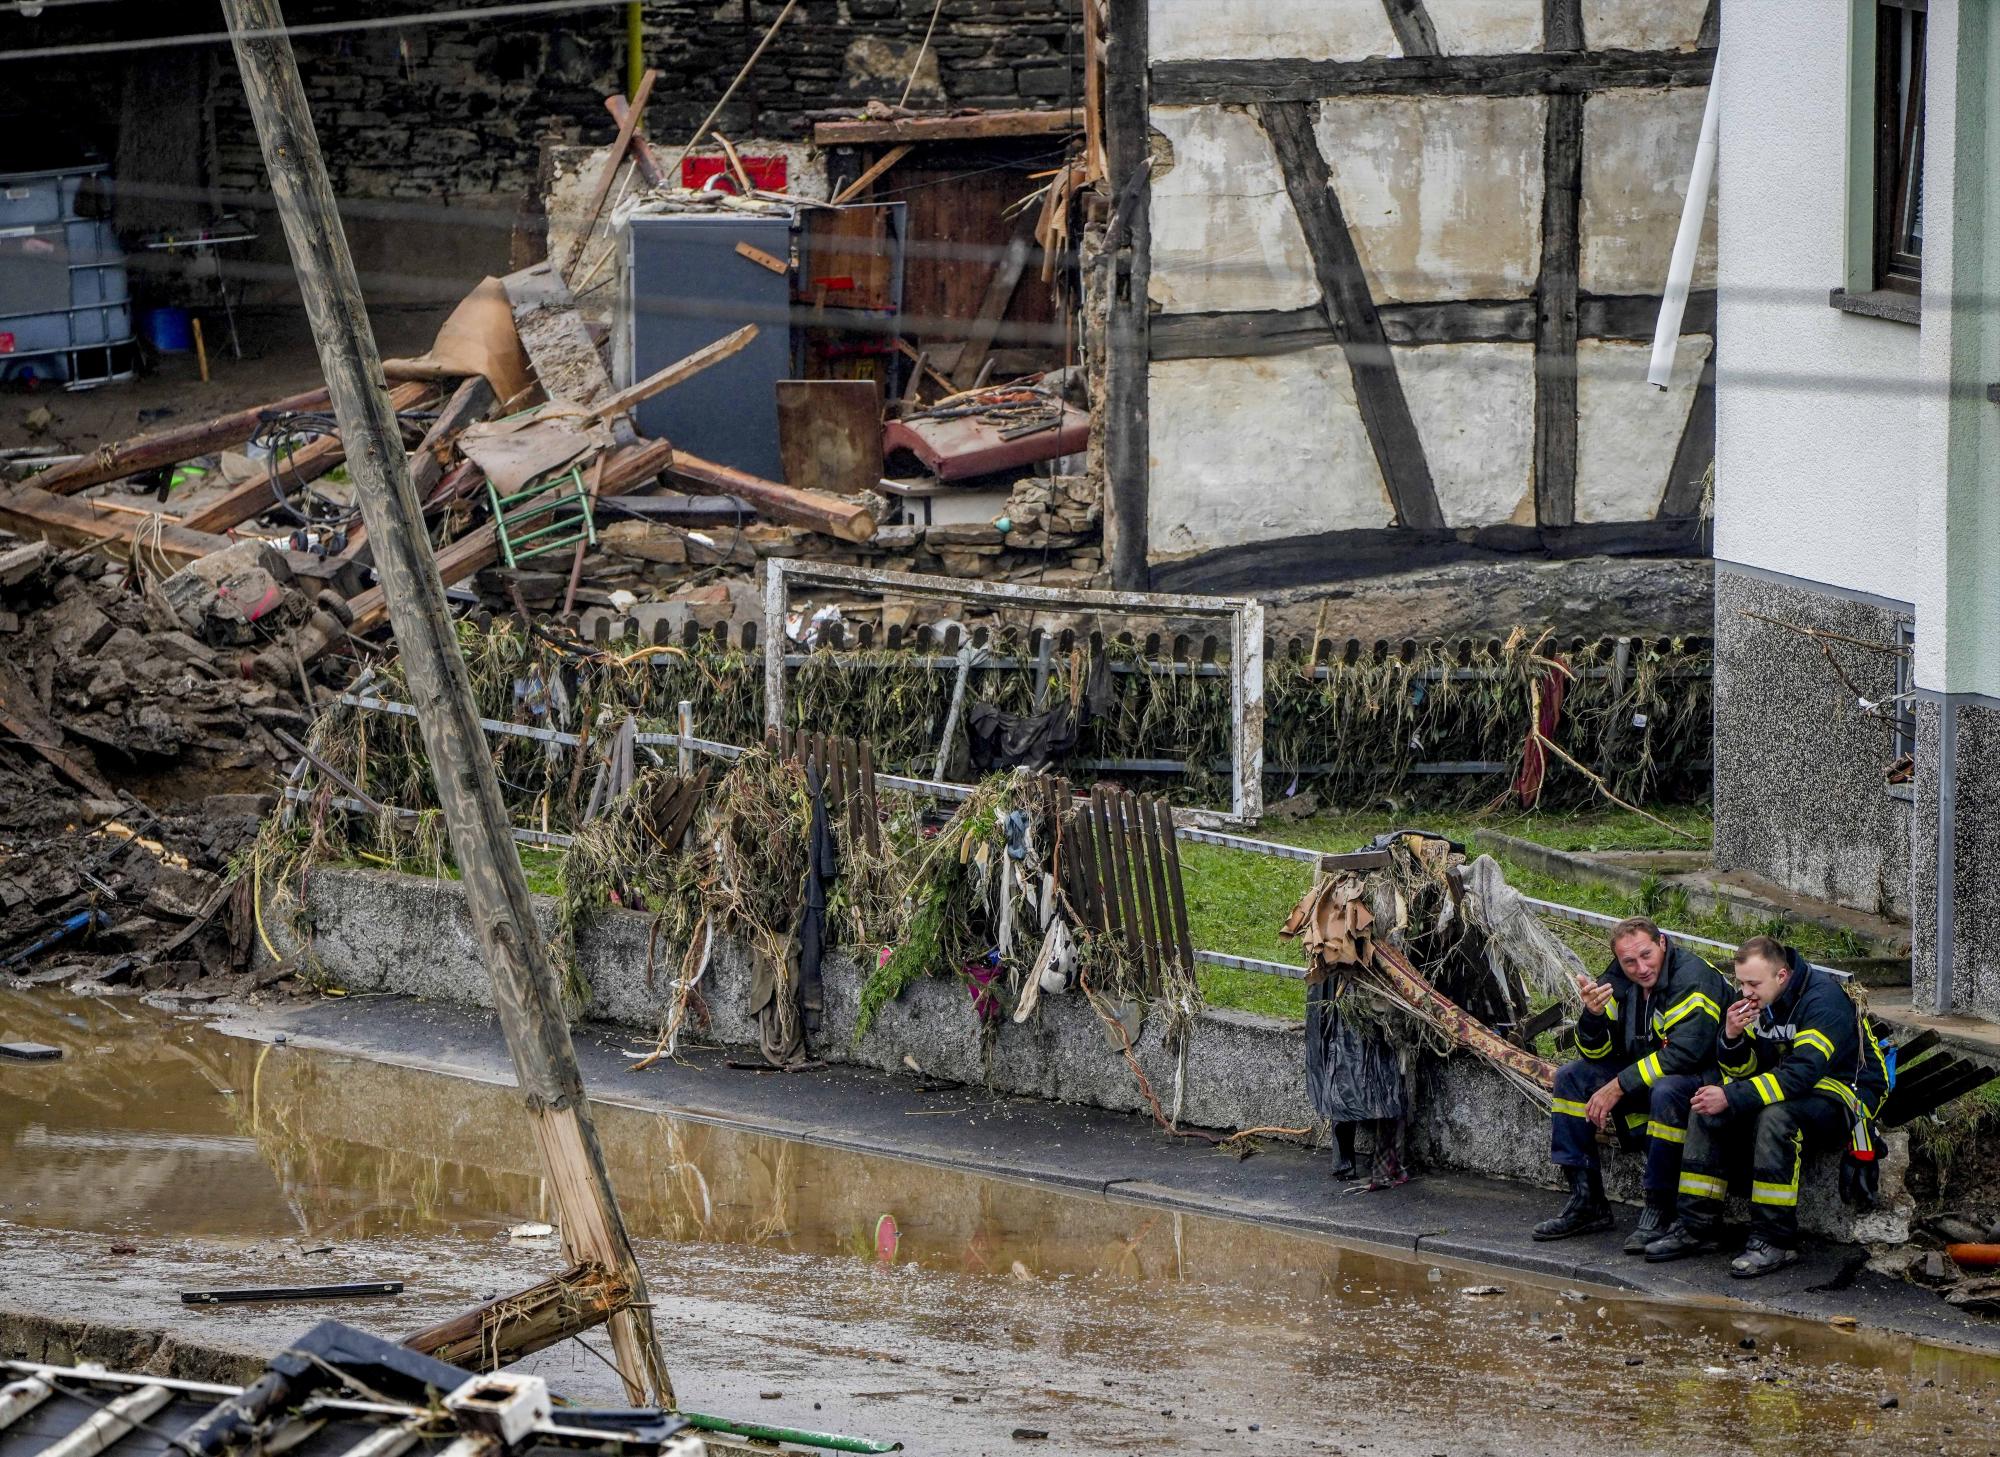 Los bomberos descansan junto a los escombros de las casas en Schuld, Alemania, el viernes 16 de julio de 2021. Dos días antes de que el río Ahr se desbordara por las fuertes lluvias que causaron varias muertes y cientos de desaparecidos. (AP Photo/Michael Probst)